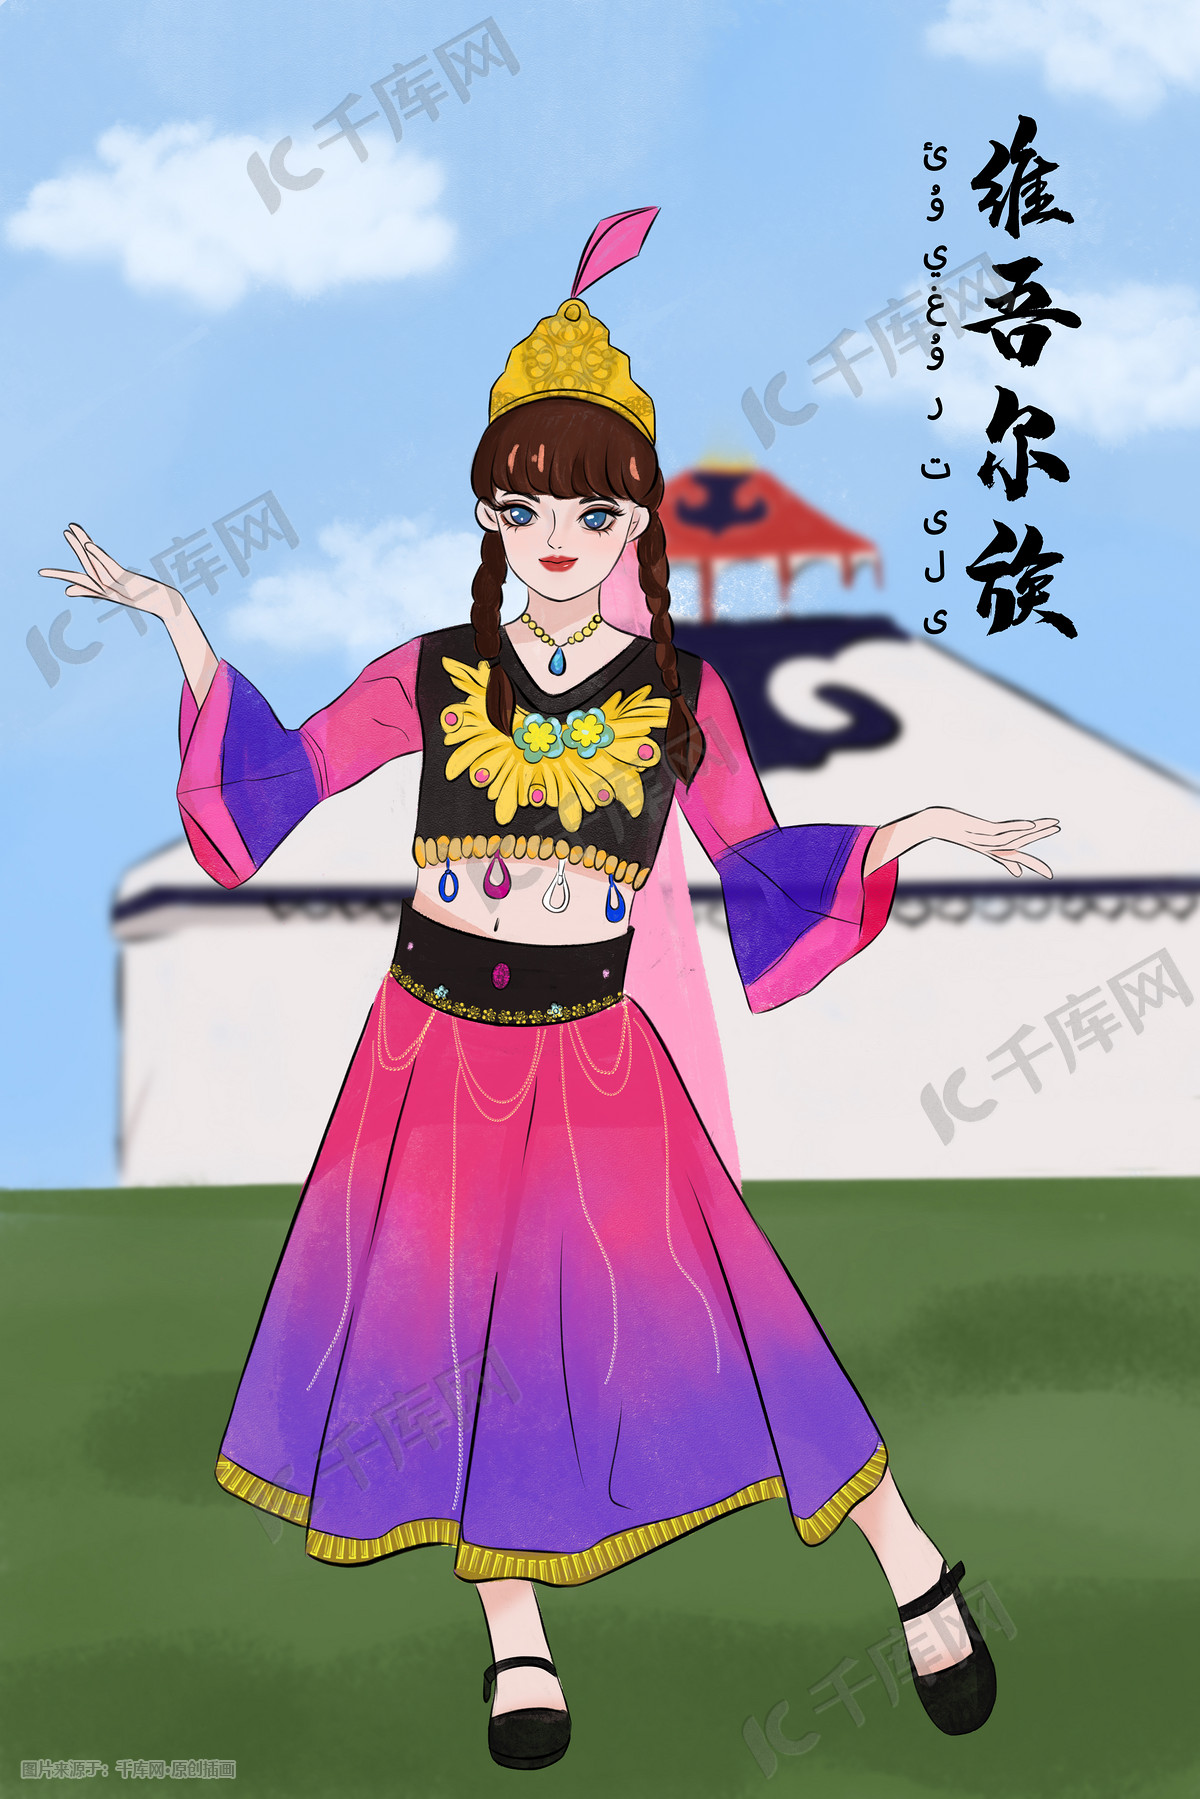 少数民族人物维吾尔族手绘插画图片-千库网